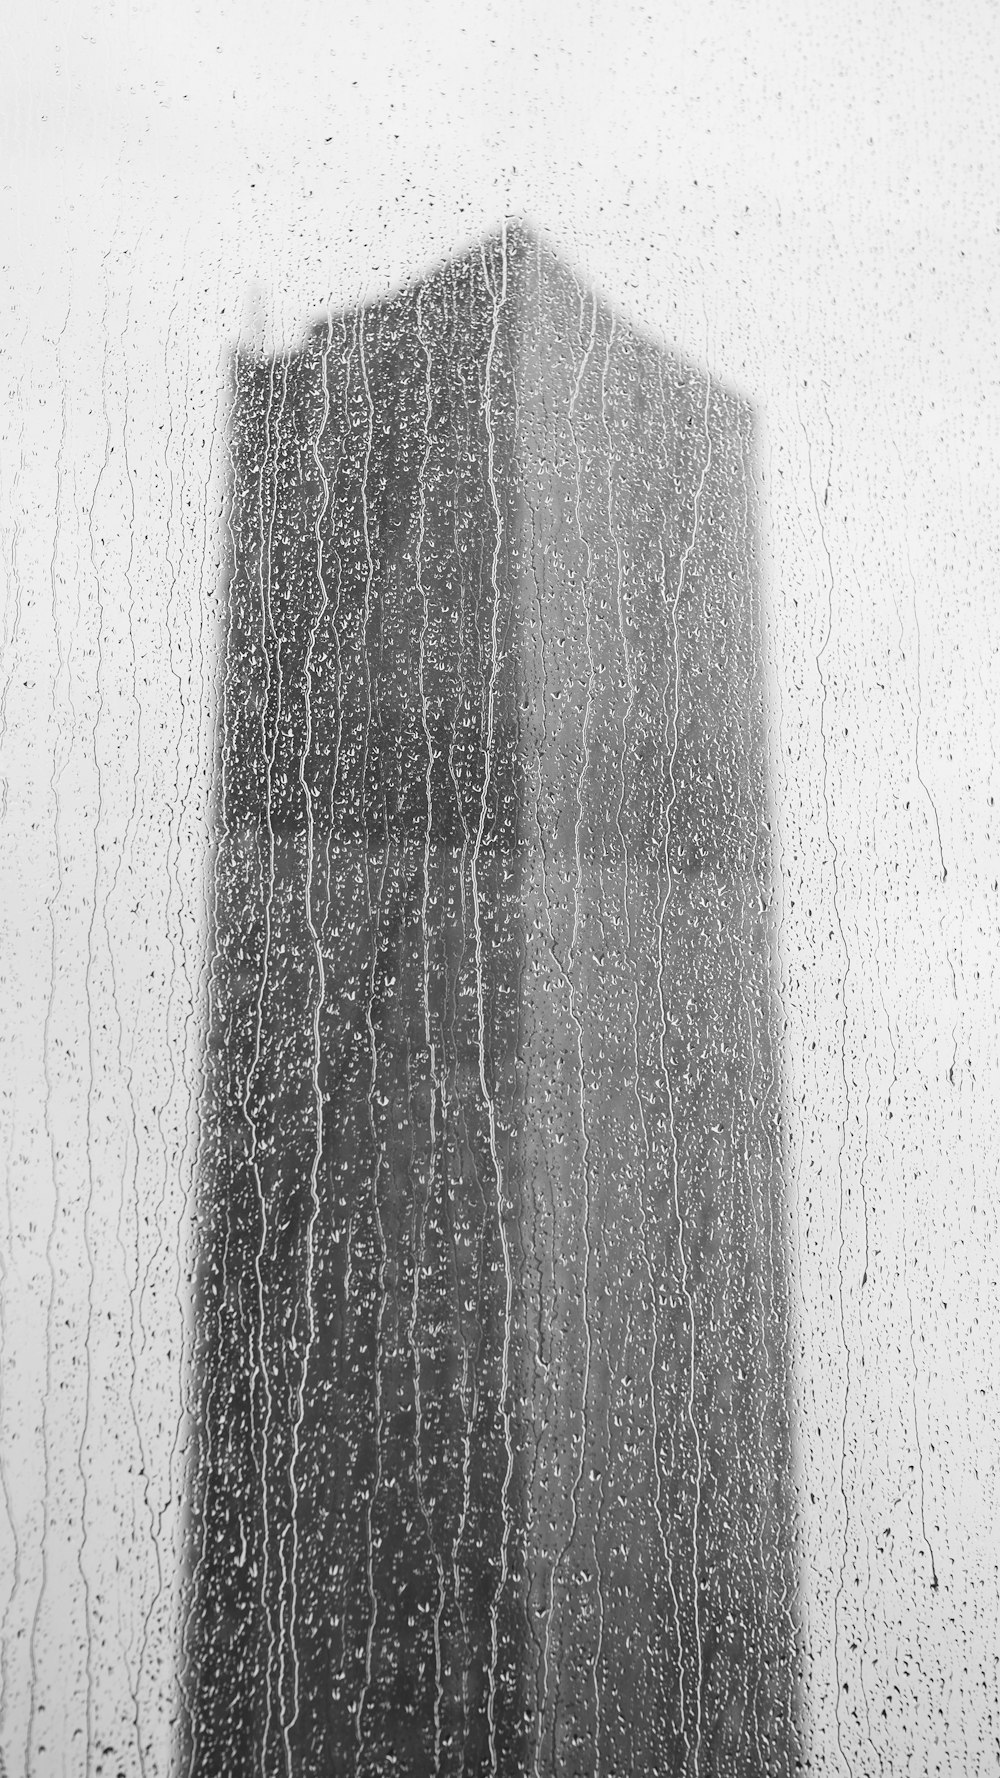 비에 젖은 창문을 통해 높은 건물이 보입니다